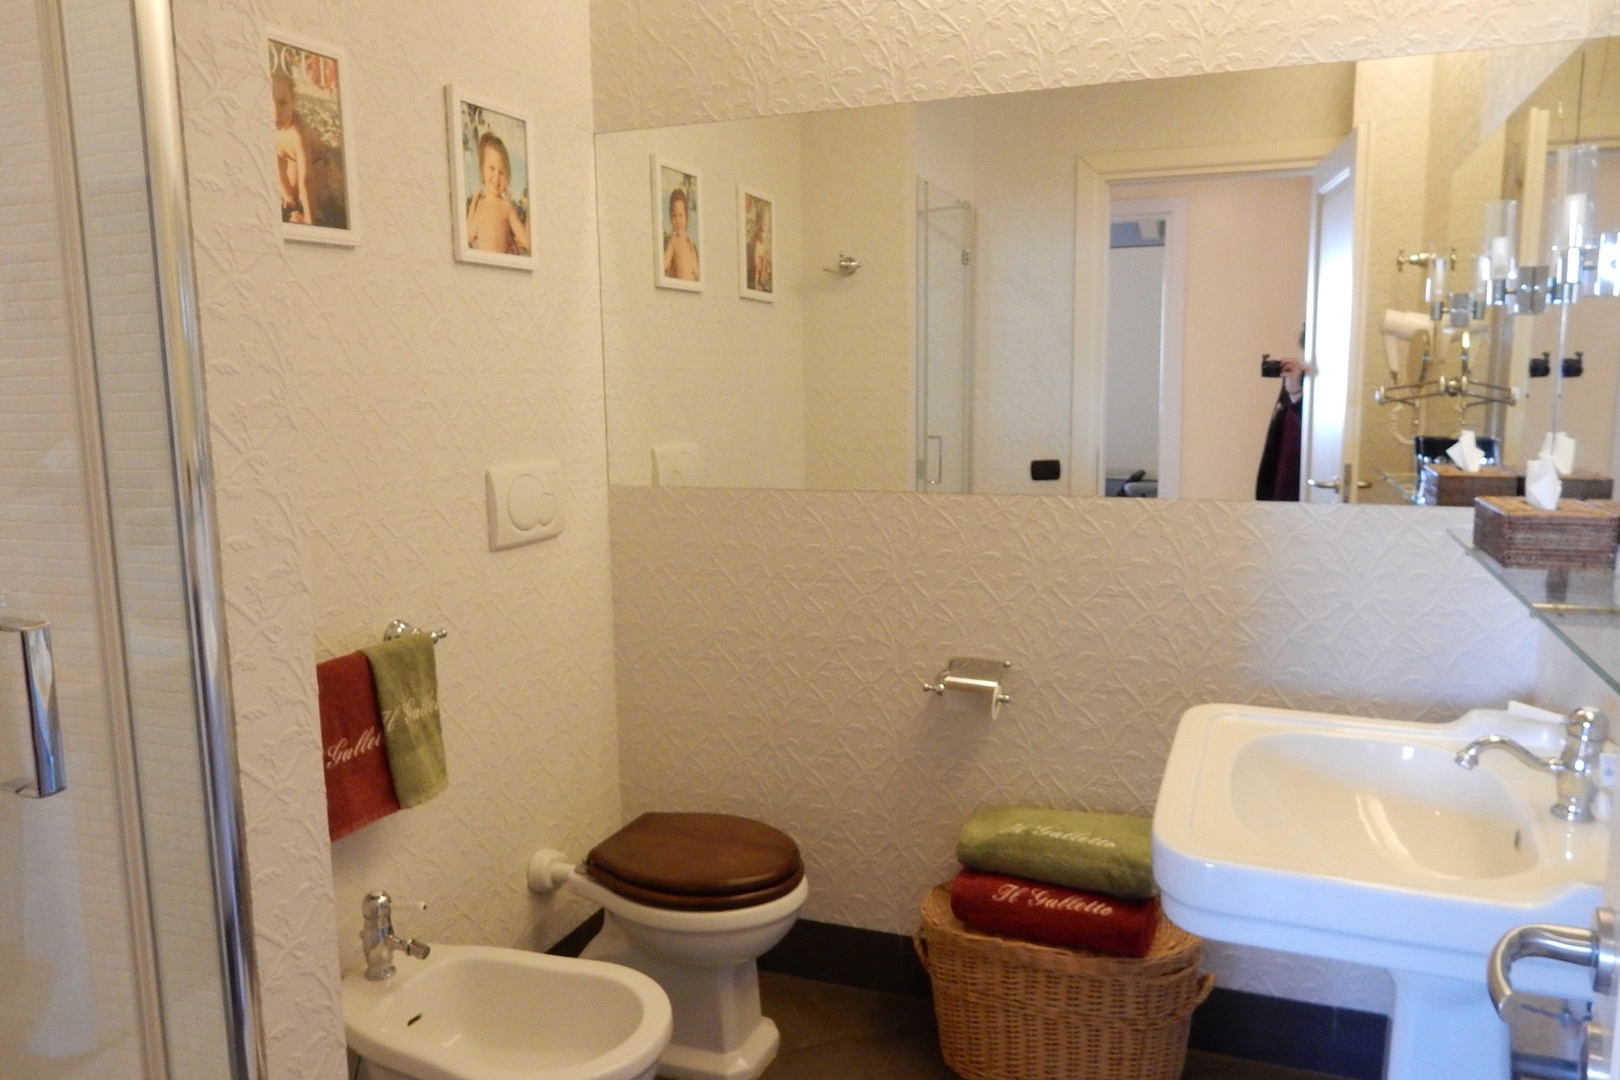 En suite bathroom has large shower, toilet, sink, bidet.